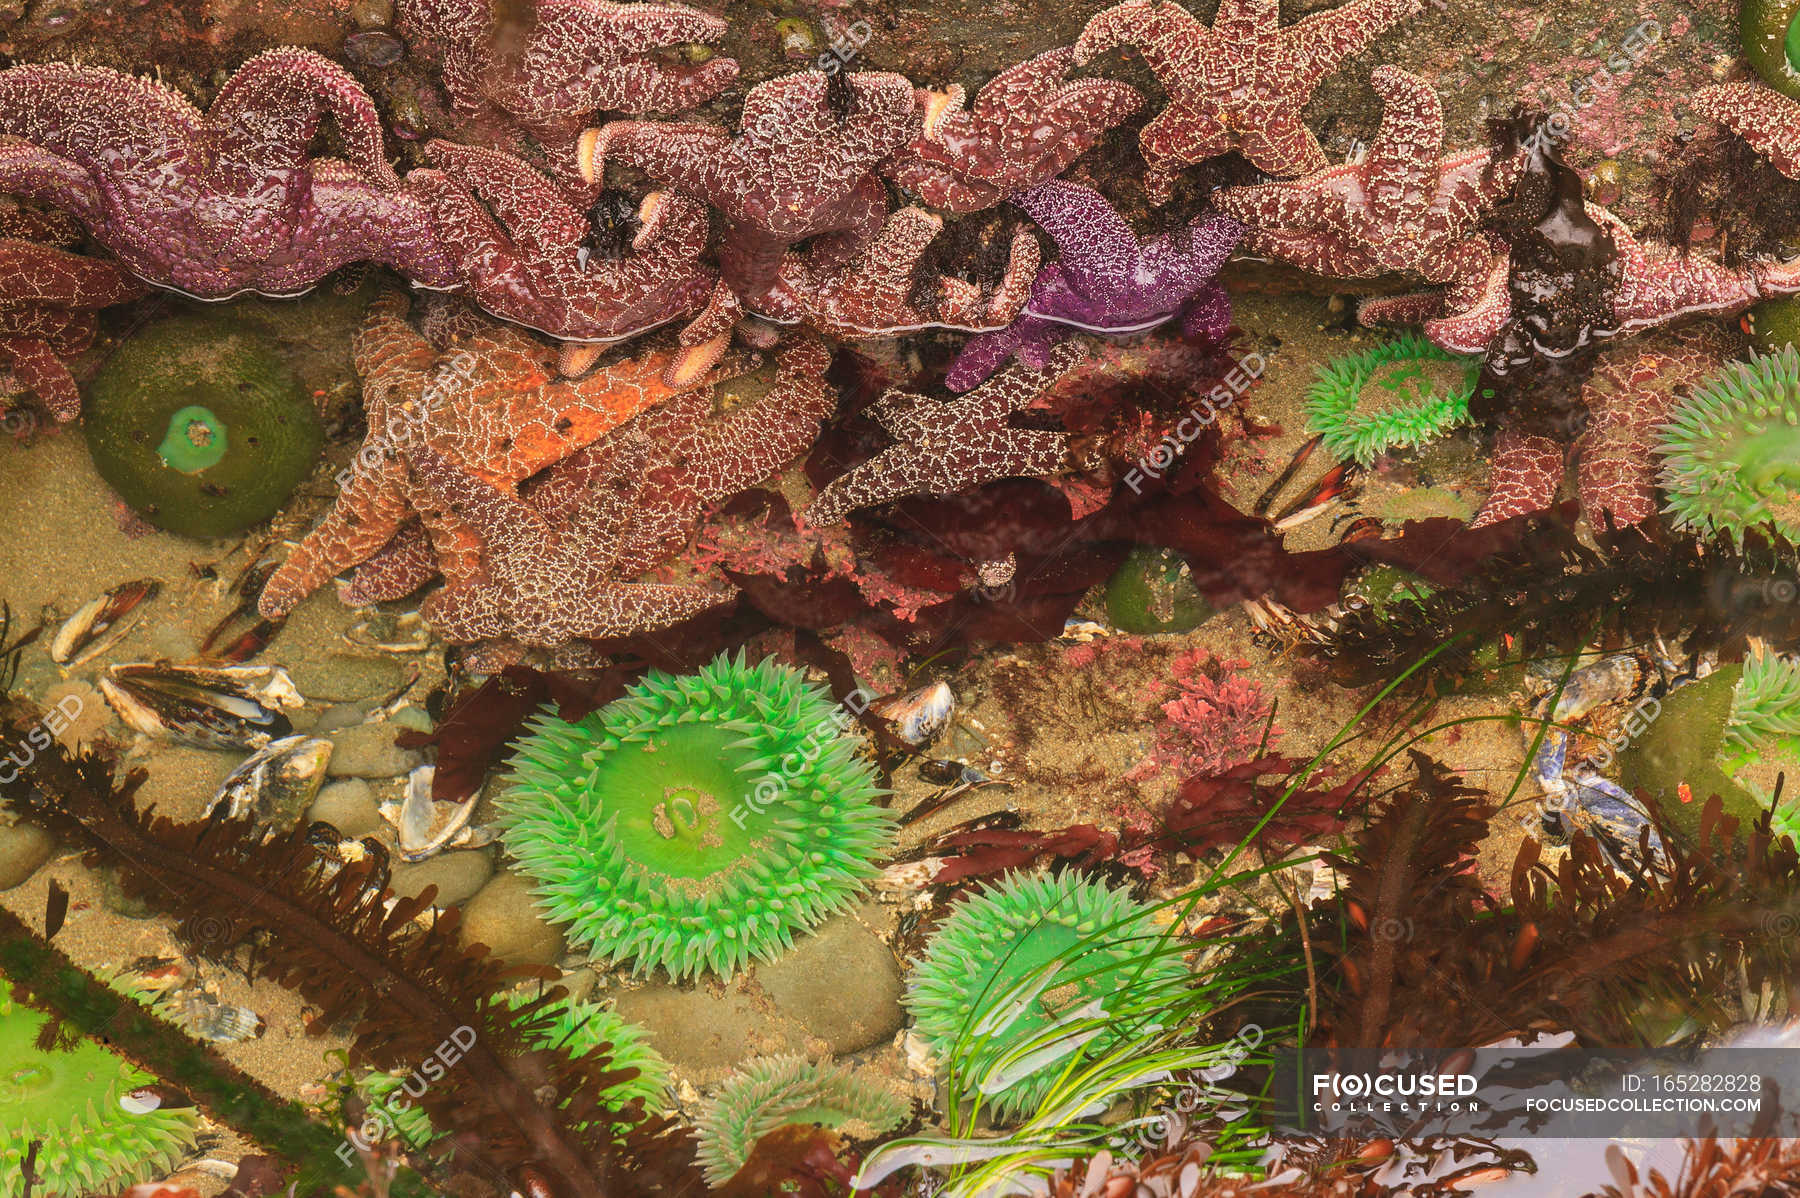 intertidal zone starfish